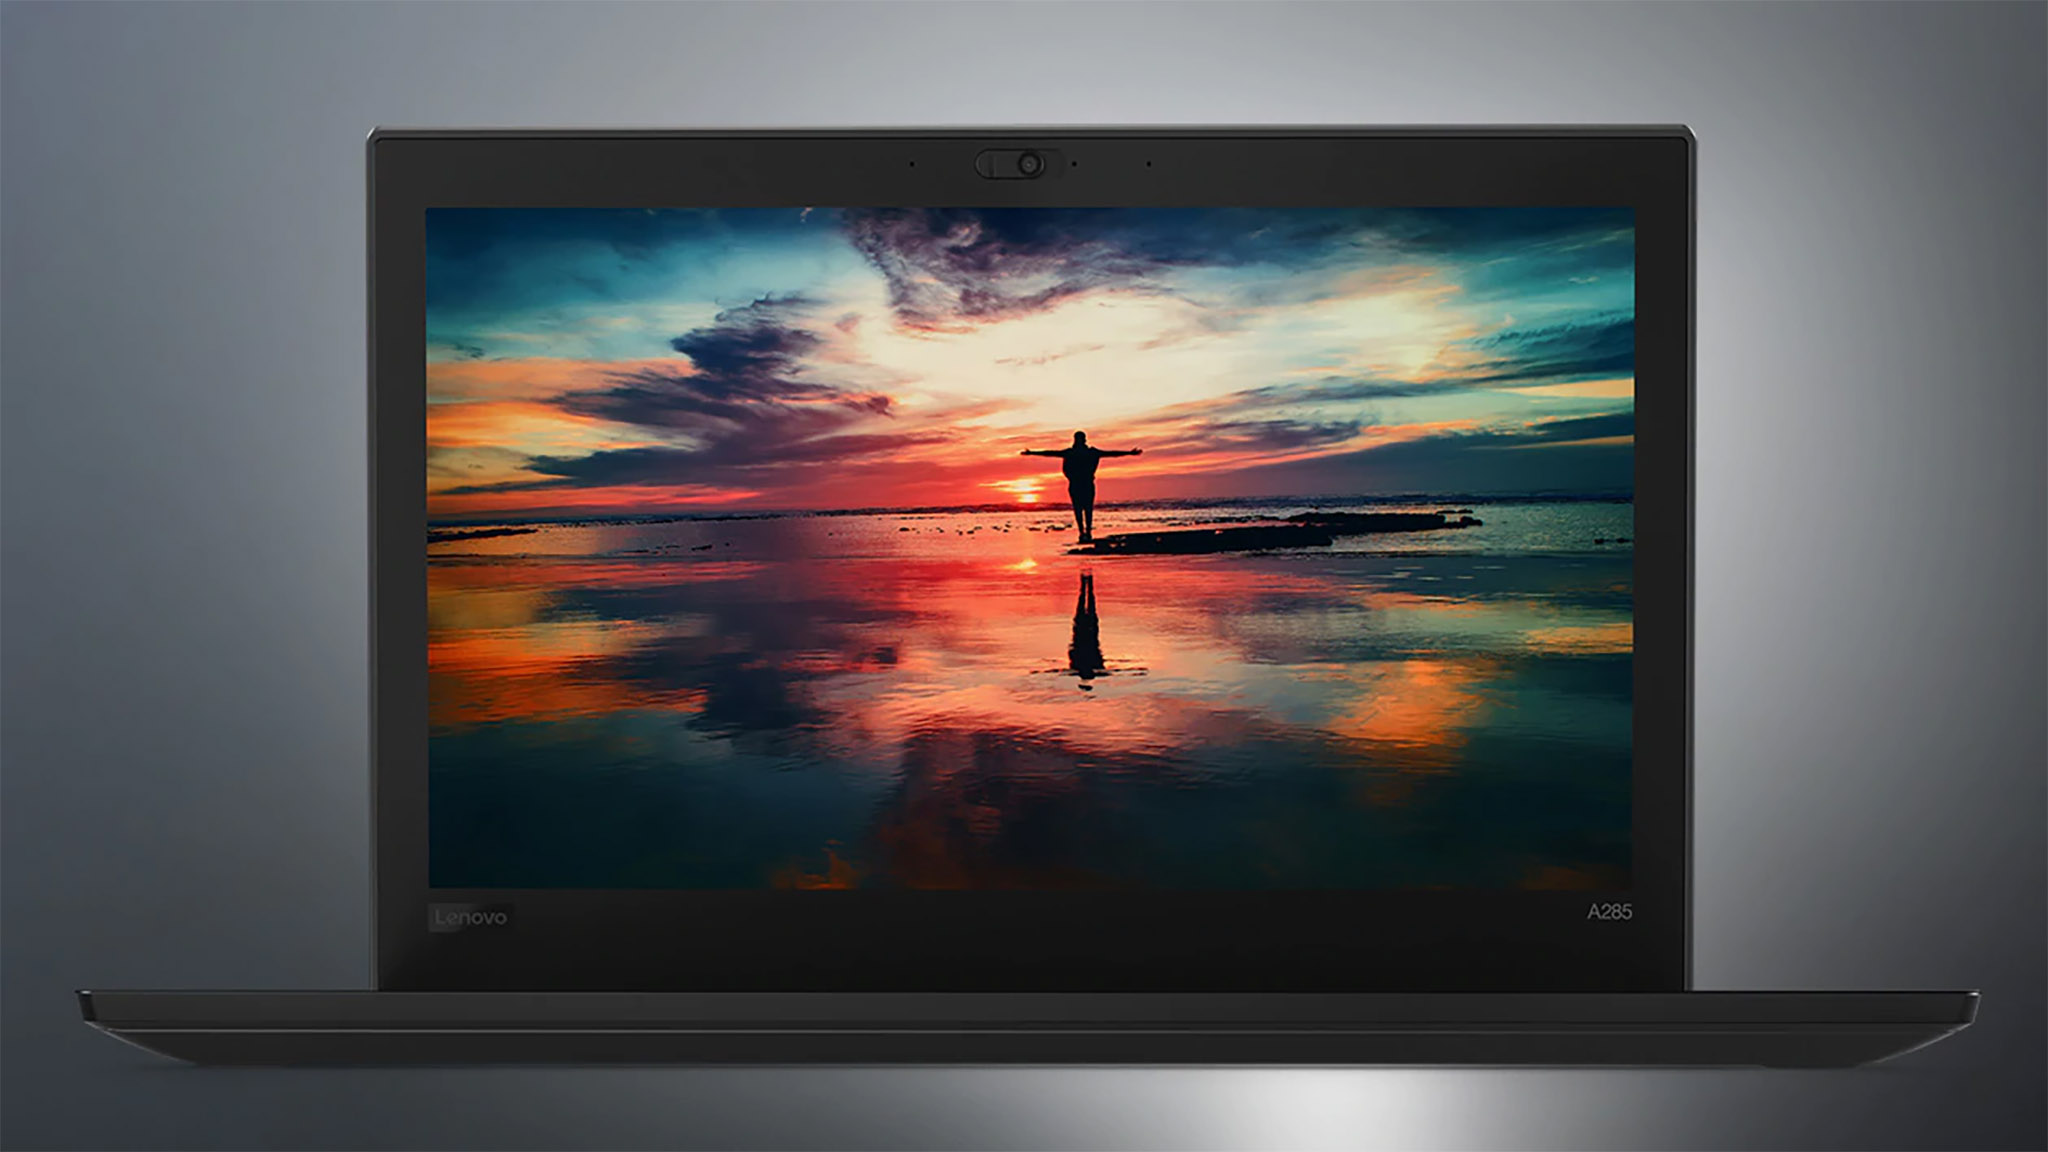 Lenovo ra mắt ThinkPad A285 - biến thể của X280 chạy AMD Ryzen PRO với GPU Vega tích hợp